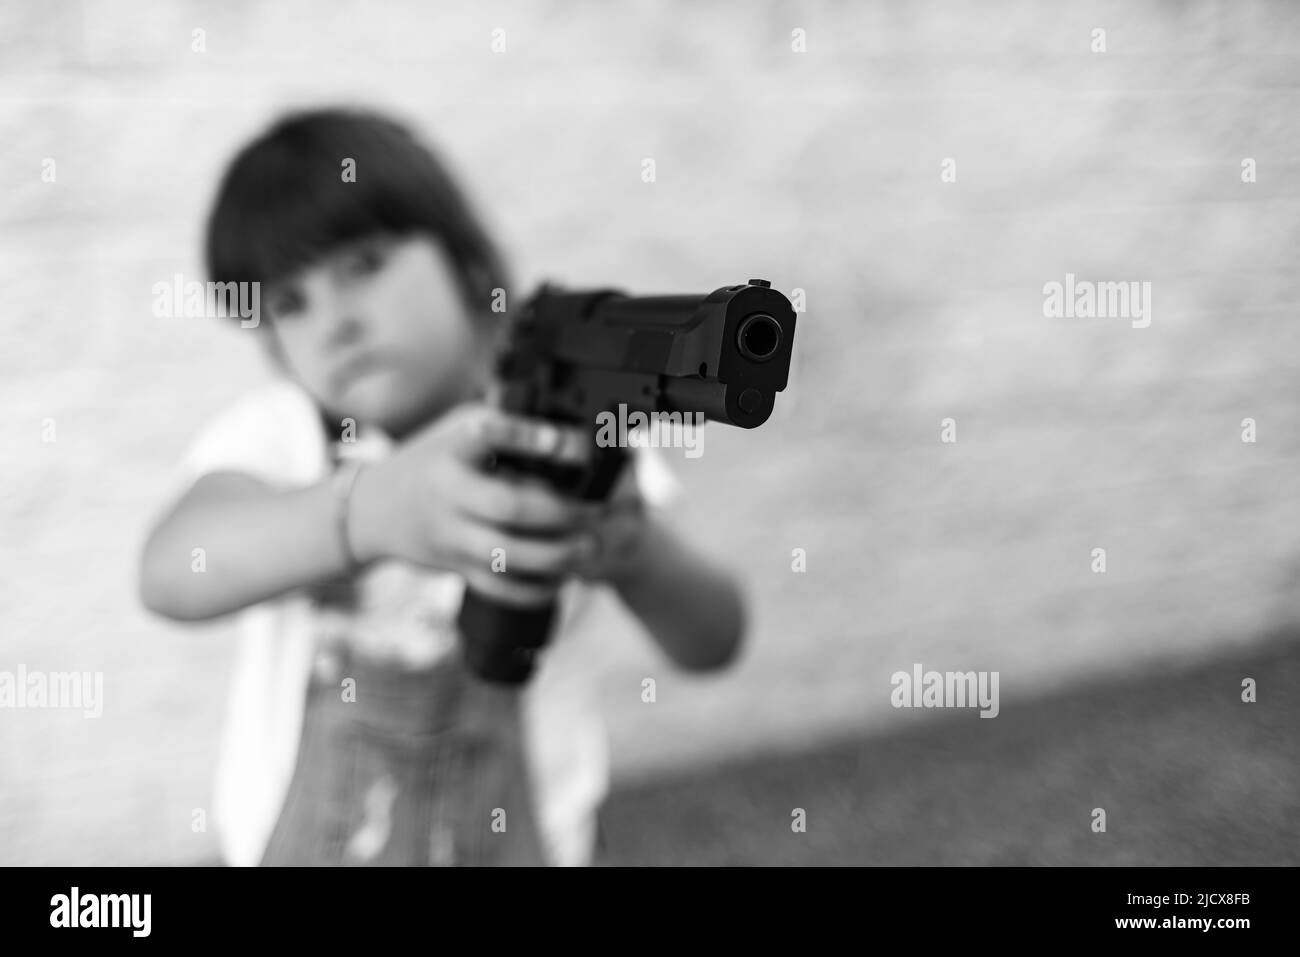 Schwarzweiß-Fotografie mit einem kleinen Mädchen, das auf eine Waffe zeigt. Konzept der Gewalt, Waffen, Waffen, Kindheit, USA, Schießen, Mord und Tod. Stockfoto